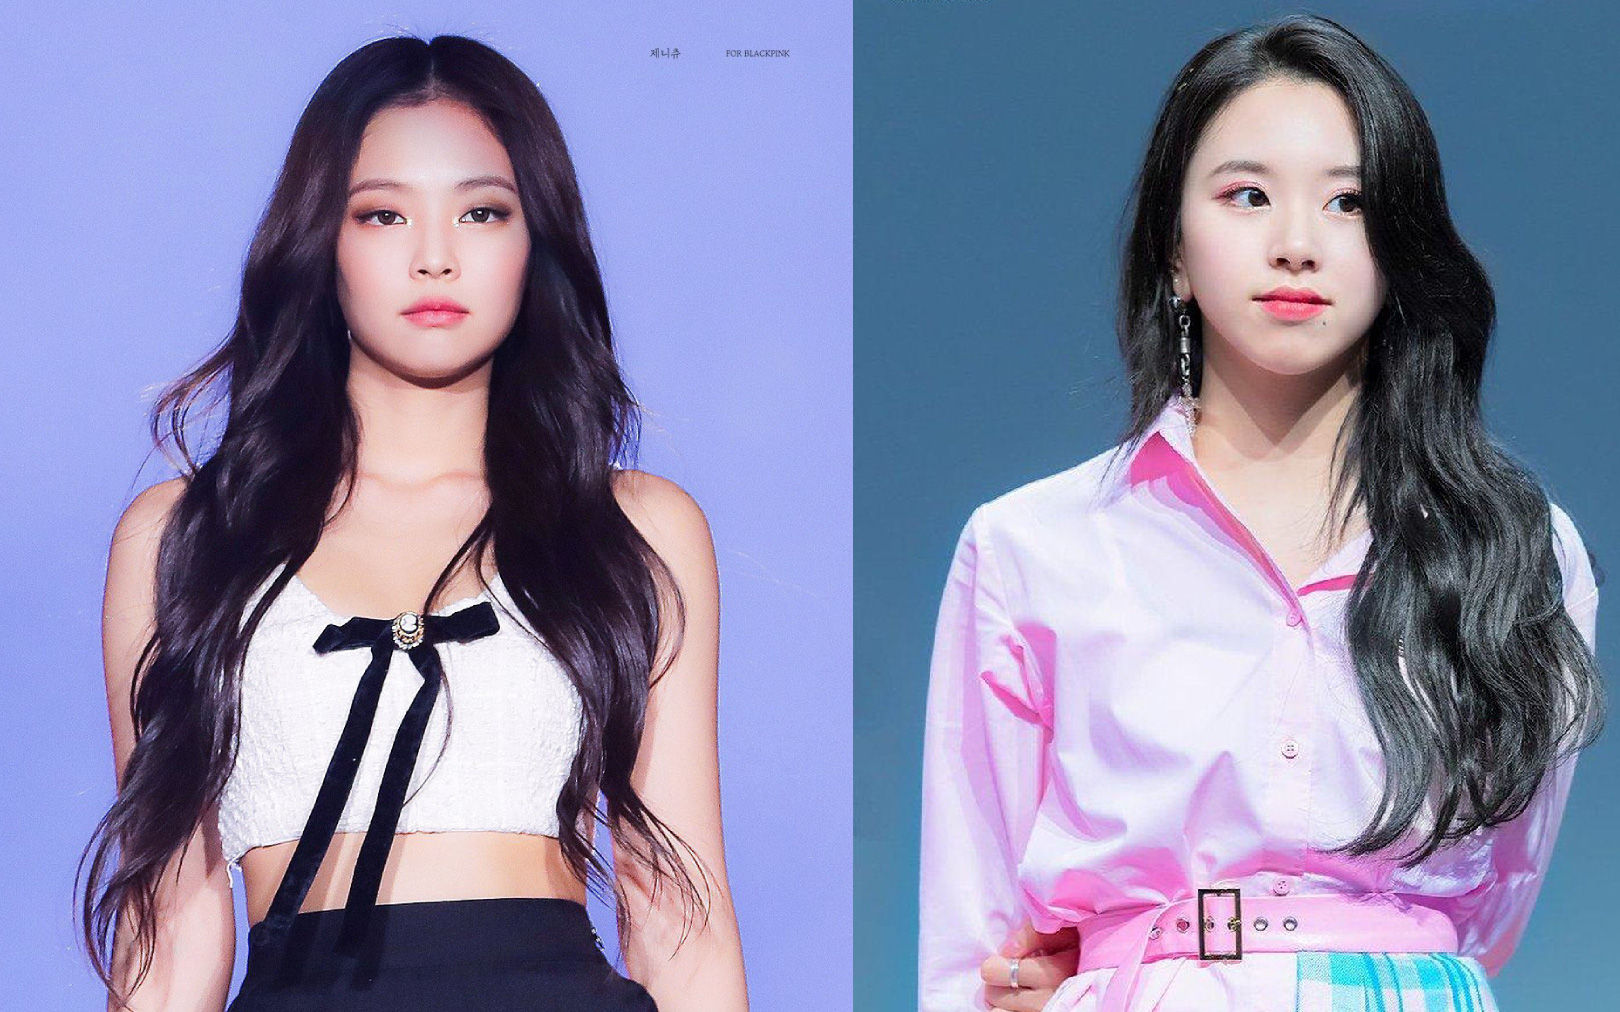 Bạn là fan của Jennie hoặc Chaeyoung và muốn thử một kiểu tóc giống họ? Hãy xem hình ảnh liên quan và tìm hiểu cách tạo kiểu tóc phù hợp với khuôn mặt và tính cách của bạn. Bạn sẽ thấy mình trở nên nổi bật và quyến rũ hơn đấy.